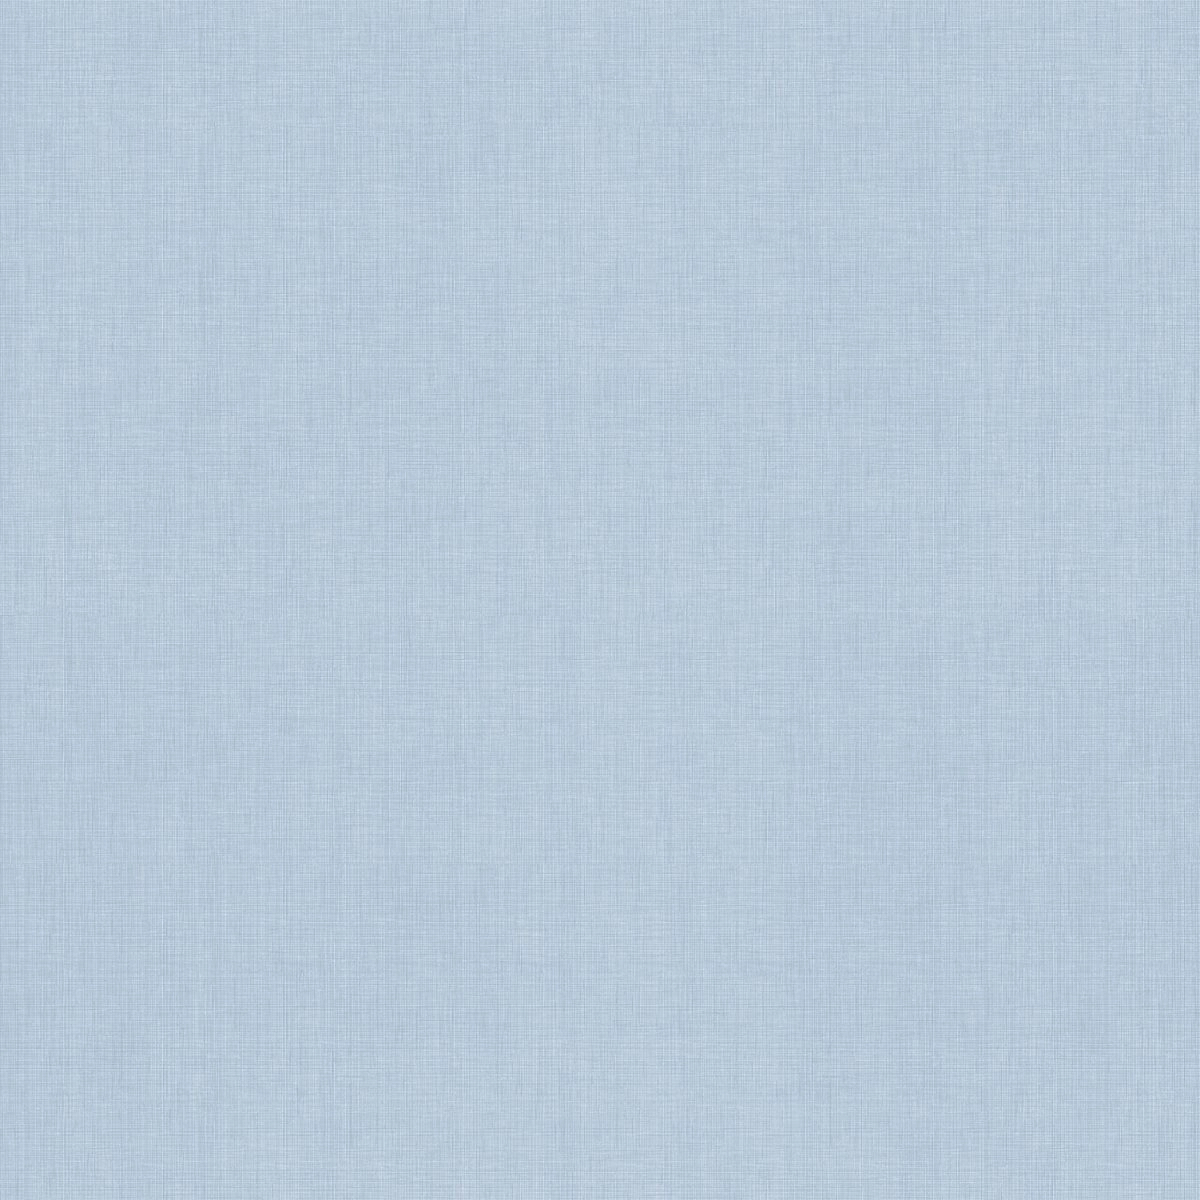 Egyszinű kék gyerekszobai vlies tapéta textil struktúrával